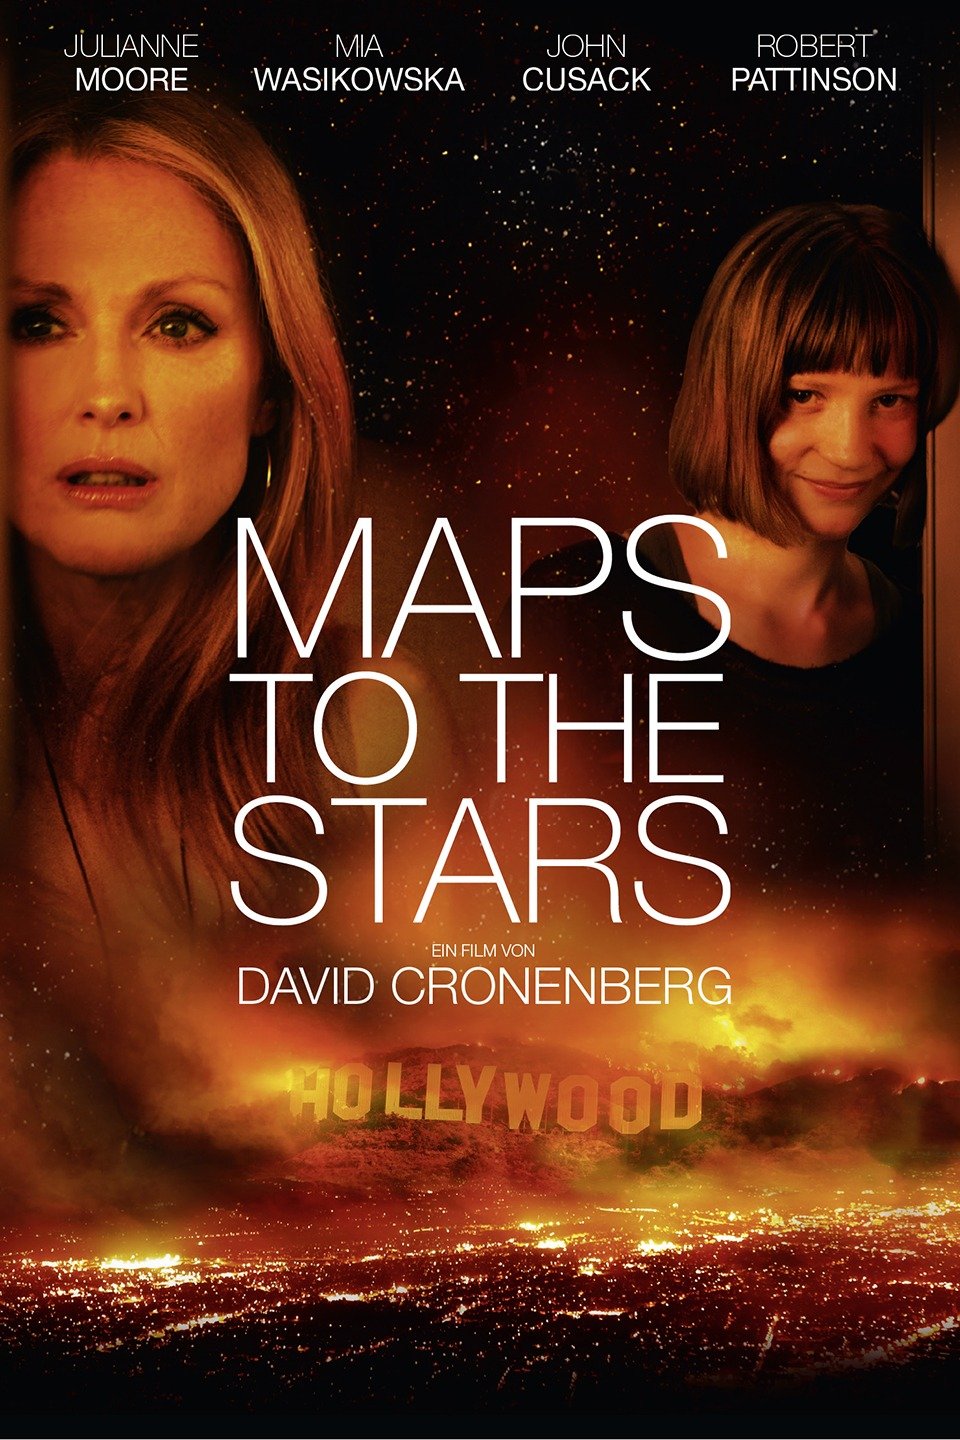 मैप्स टू द स्टार्स': हॉलीवुड के डार्क साइड में एक गहरा गोता